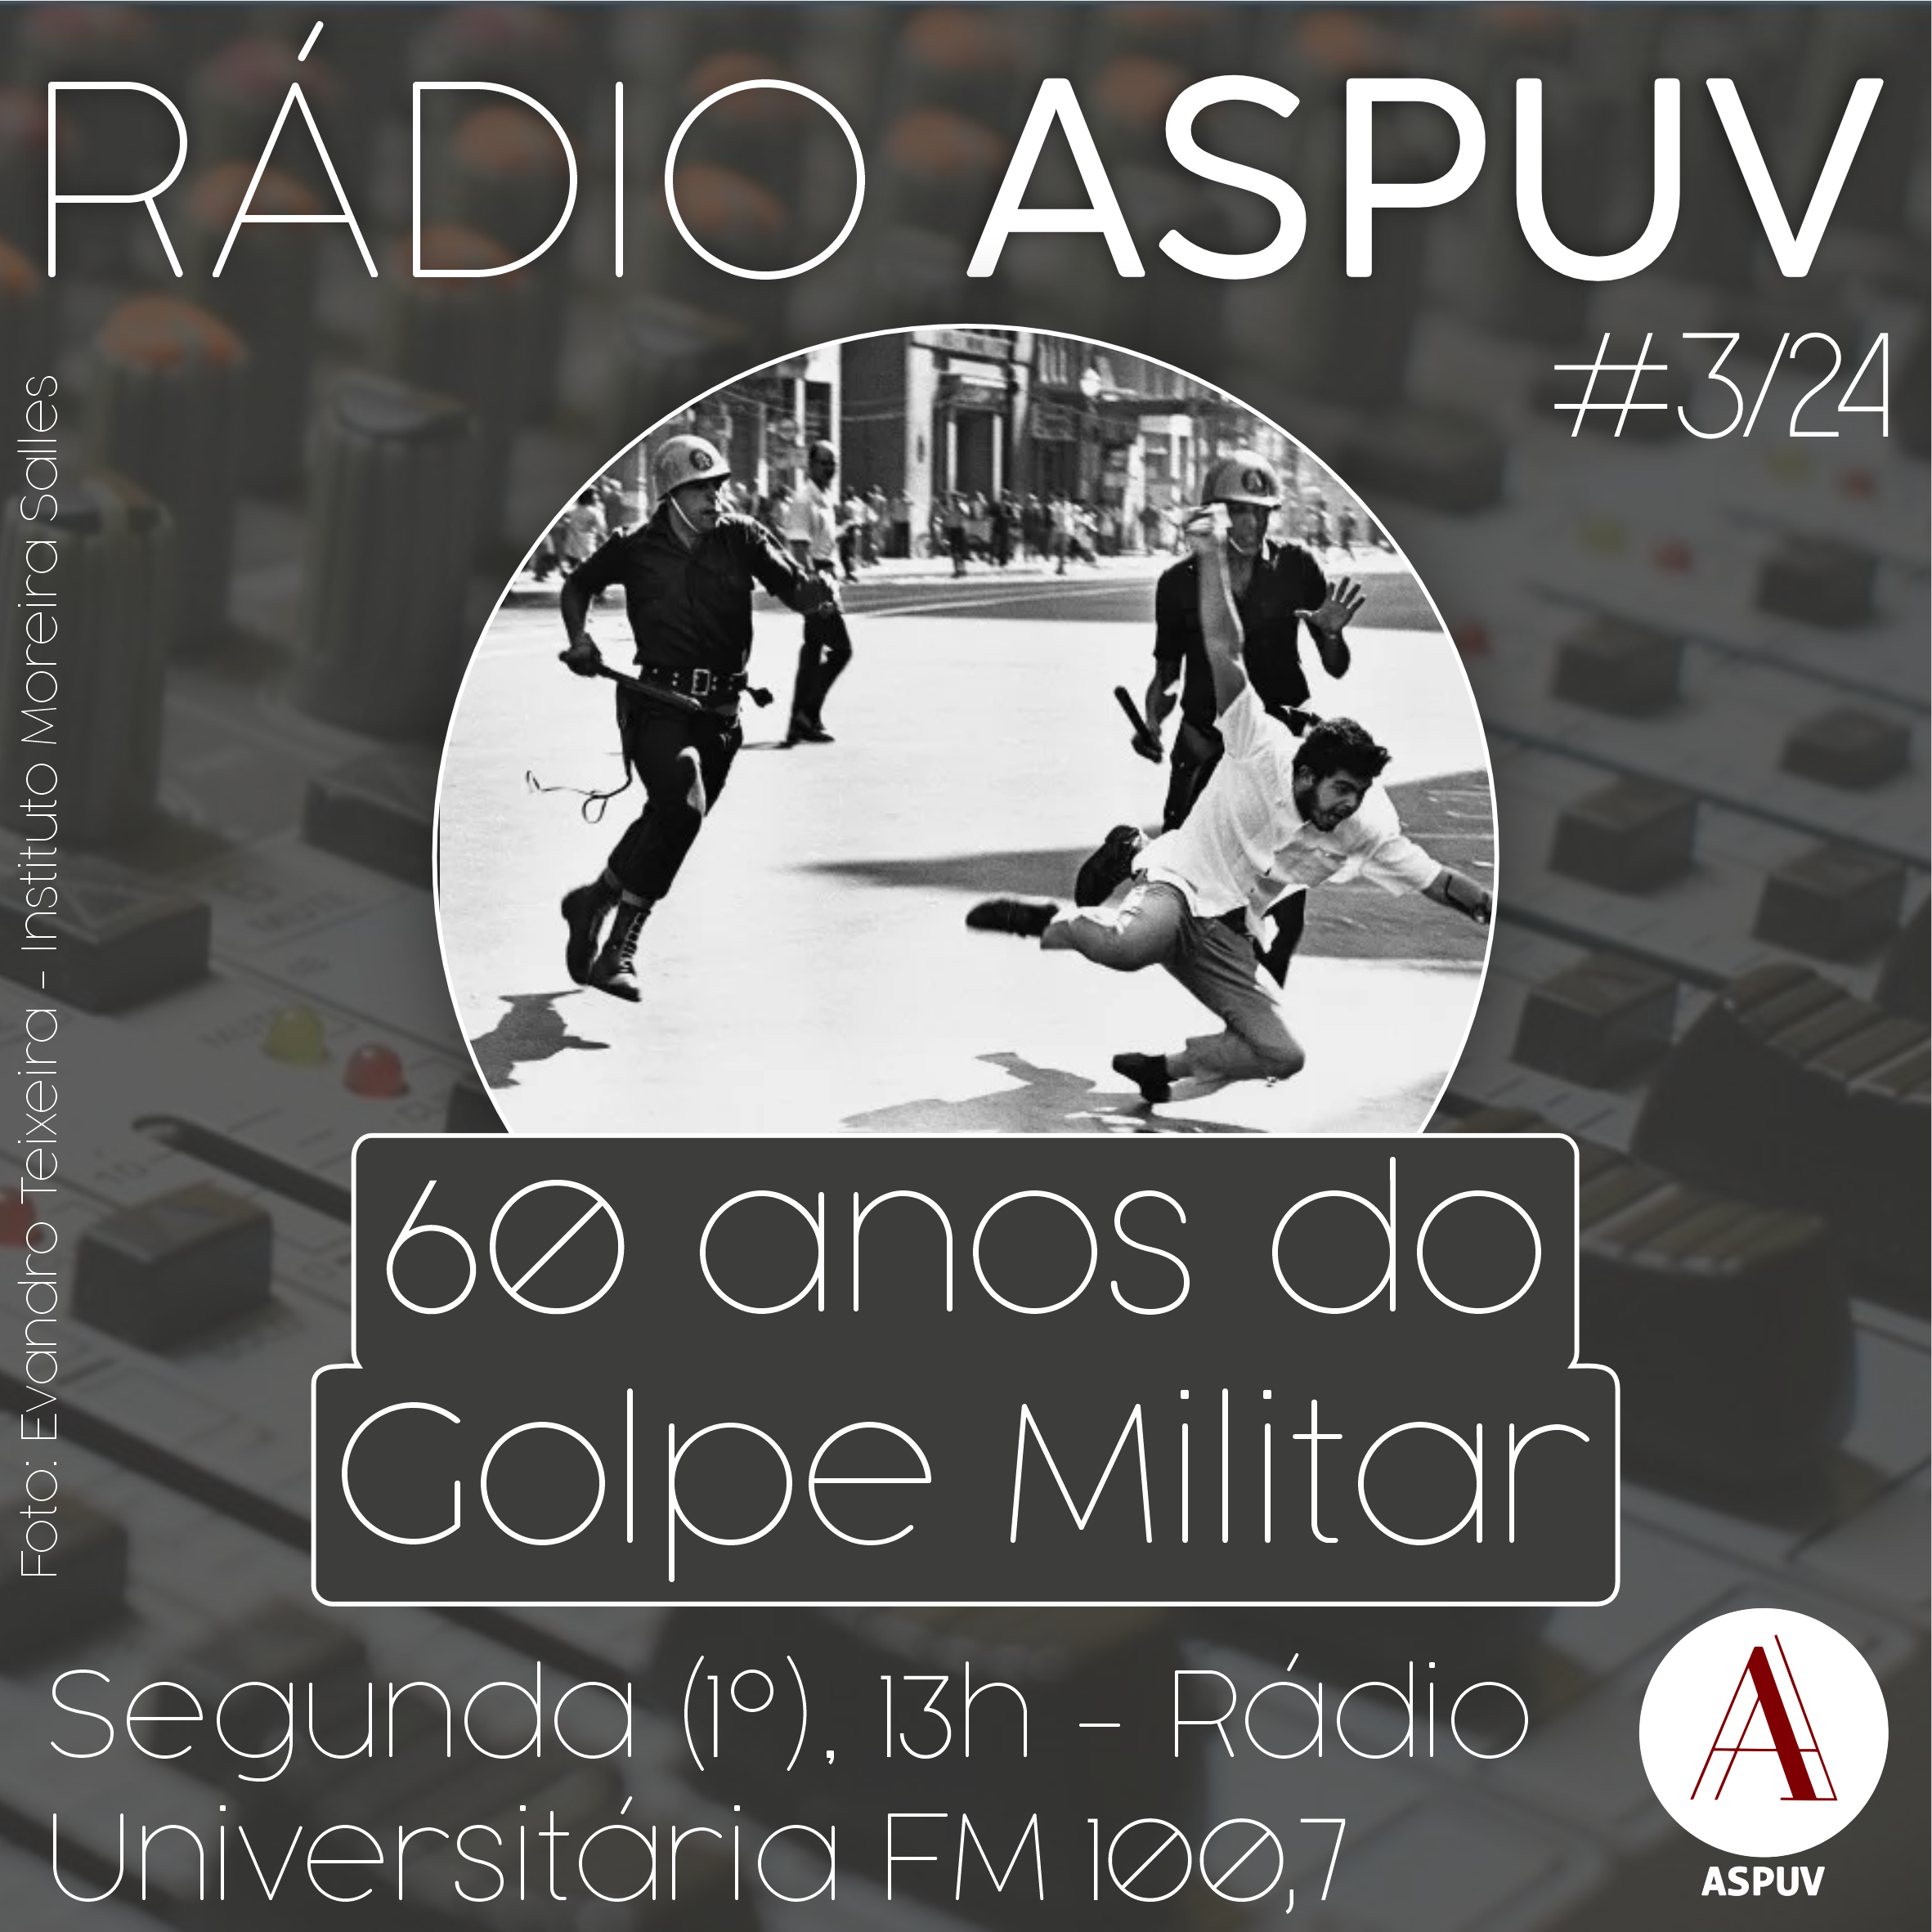 Rádio ASPUV #03/24 | 60 anos do golpe militar